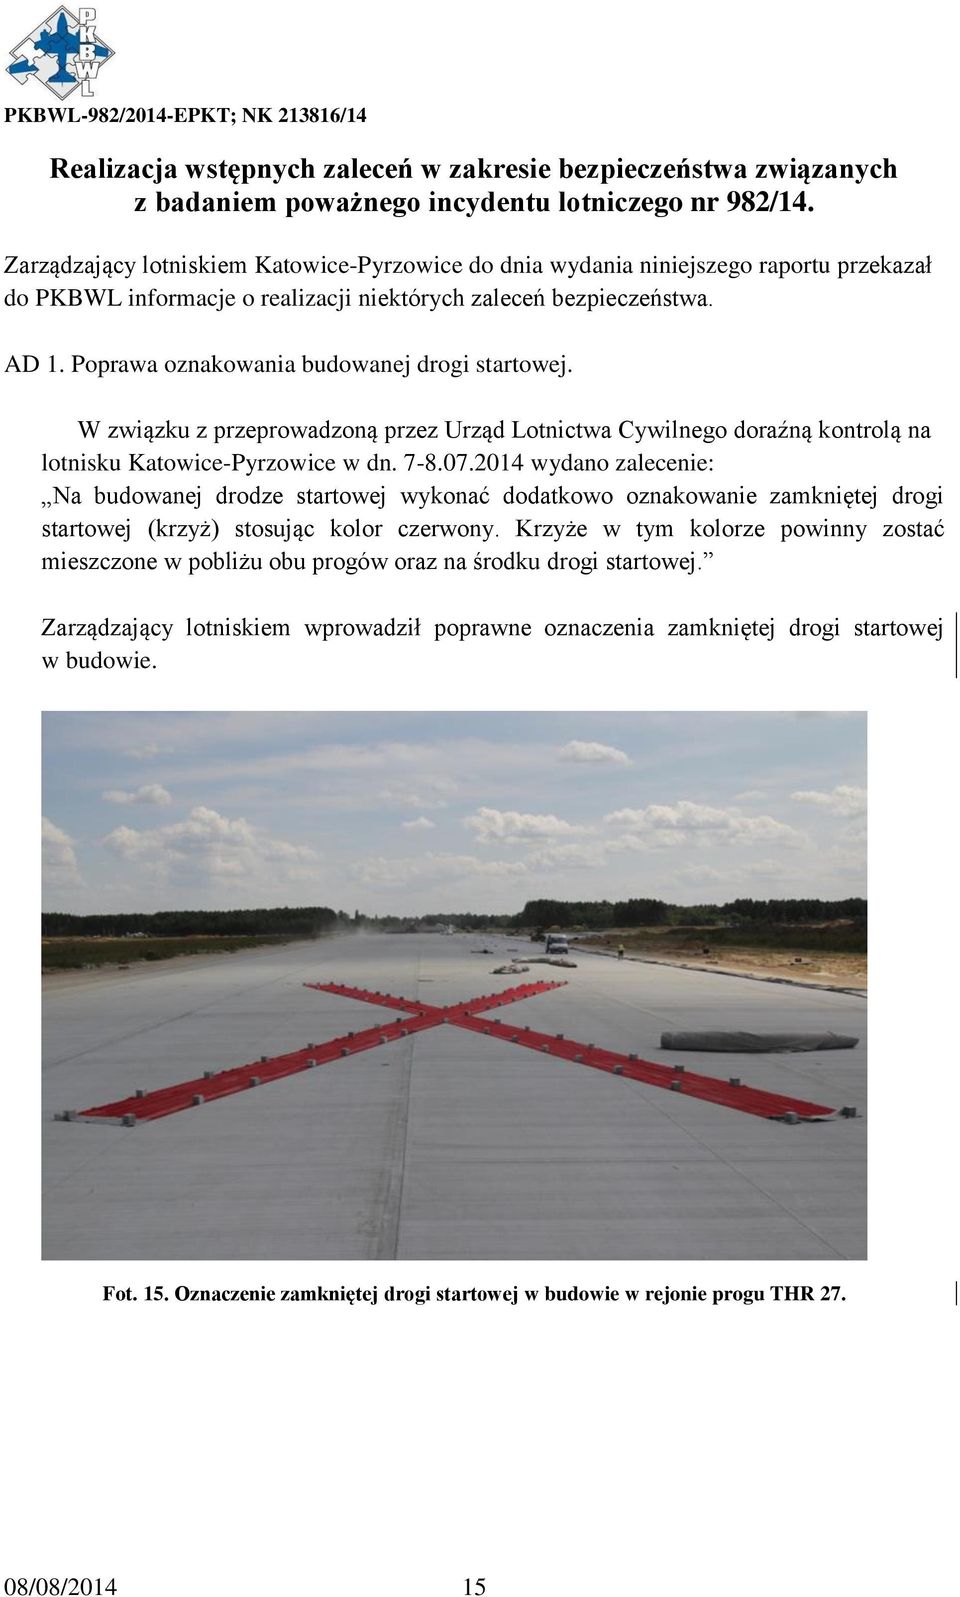 Poprawa oznakowania budowanej drogi startowej. W związku z przeprowadzoną przez Urząd Lotnictwa Cywilnego doraźną kontrolą na lotnisku Katowice-Pyrzowice w dn. 7-8.07.